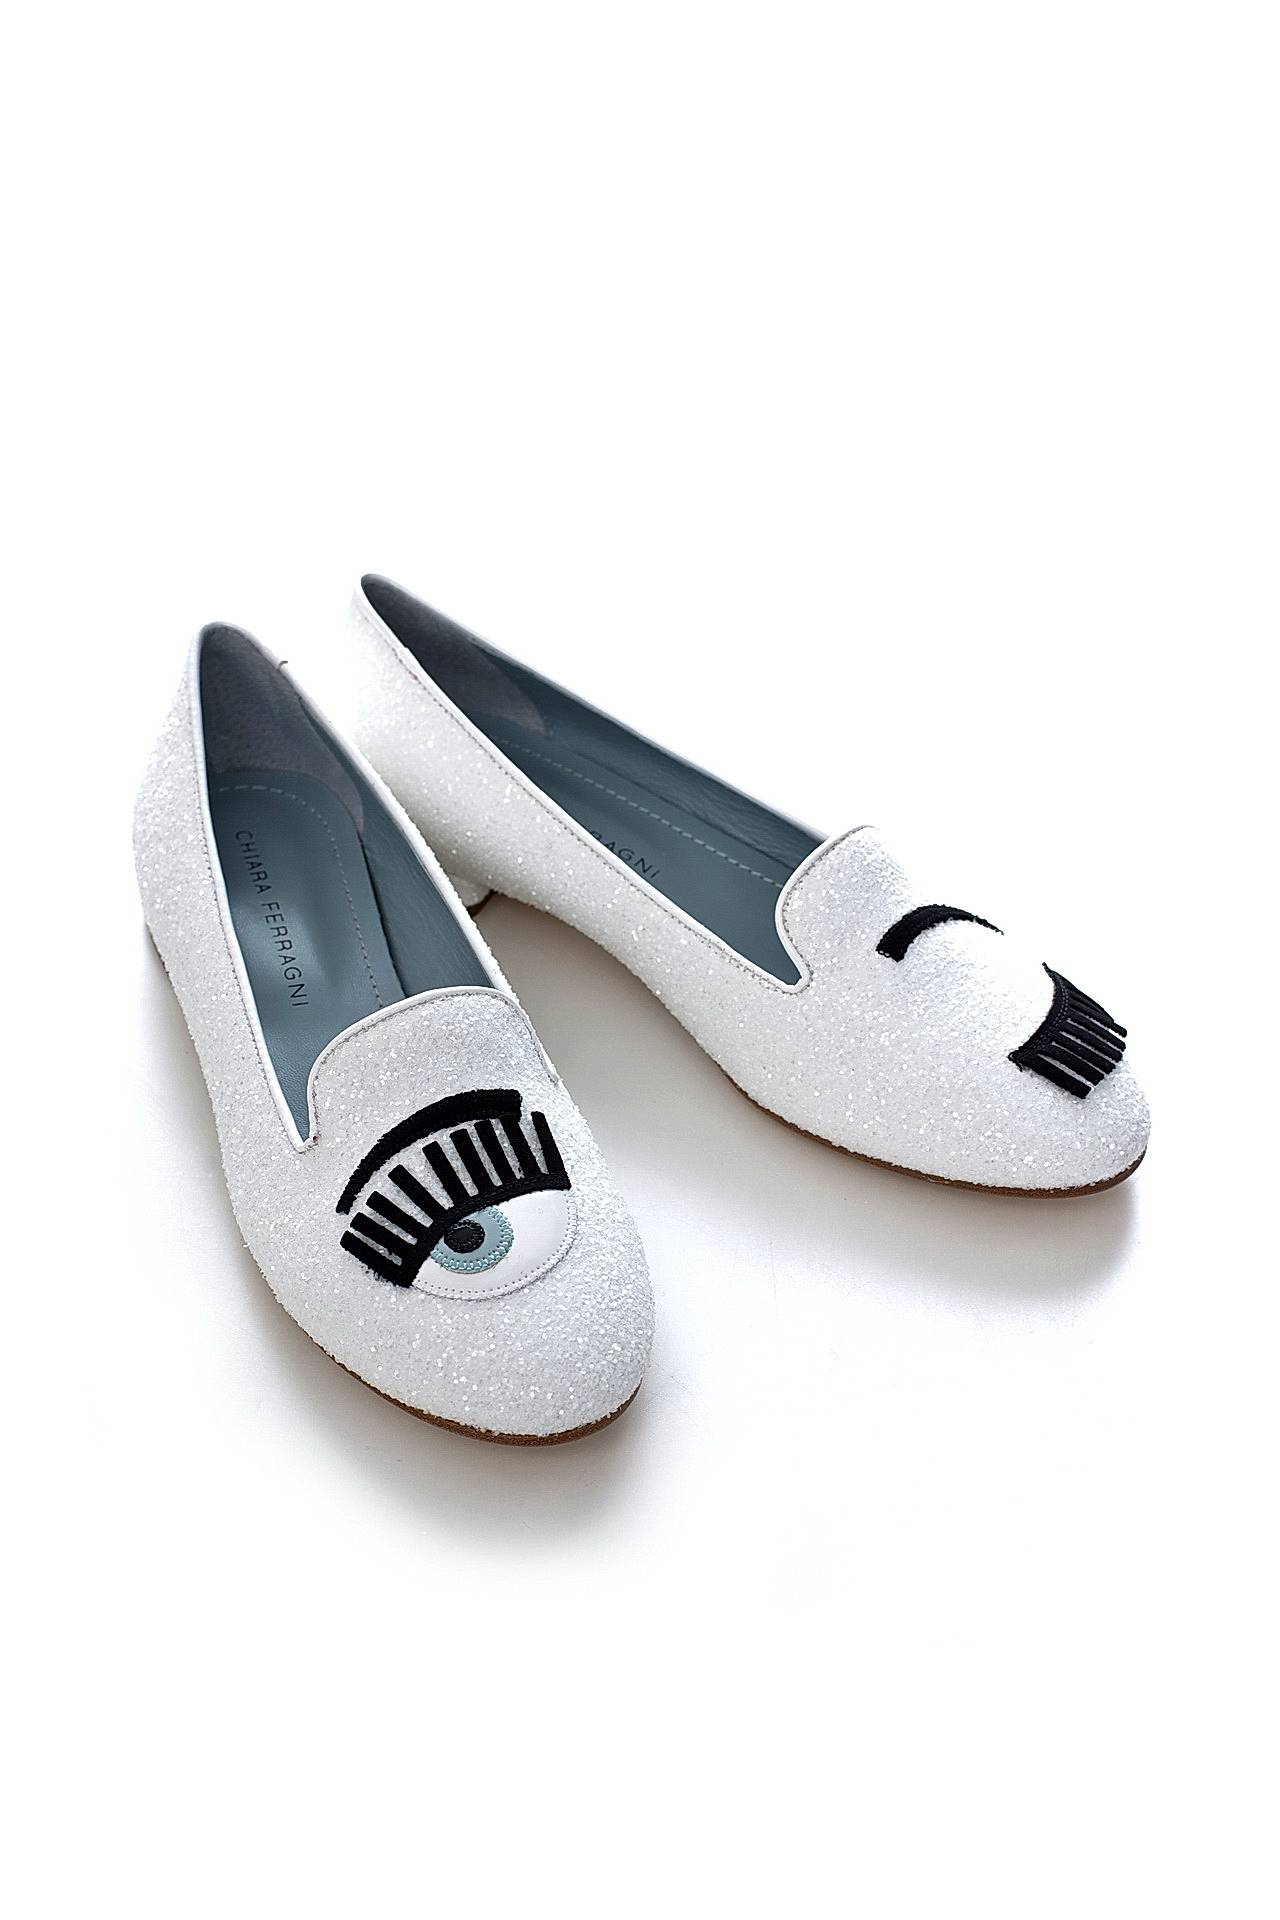 Обувь женская Слиперы CHIARA FERRAGNI (CF802/16.2). Купить за 11940 руб.